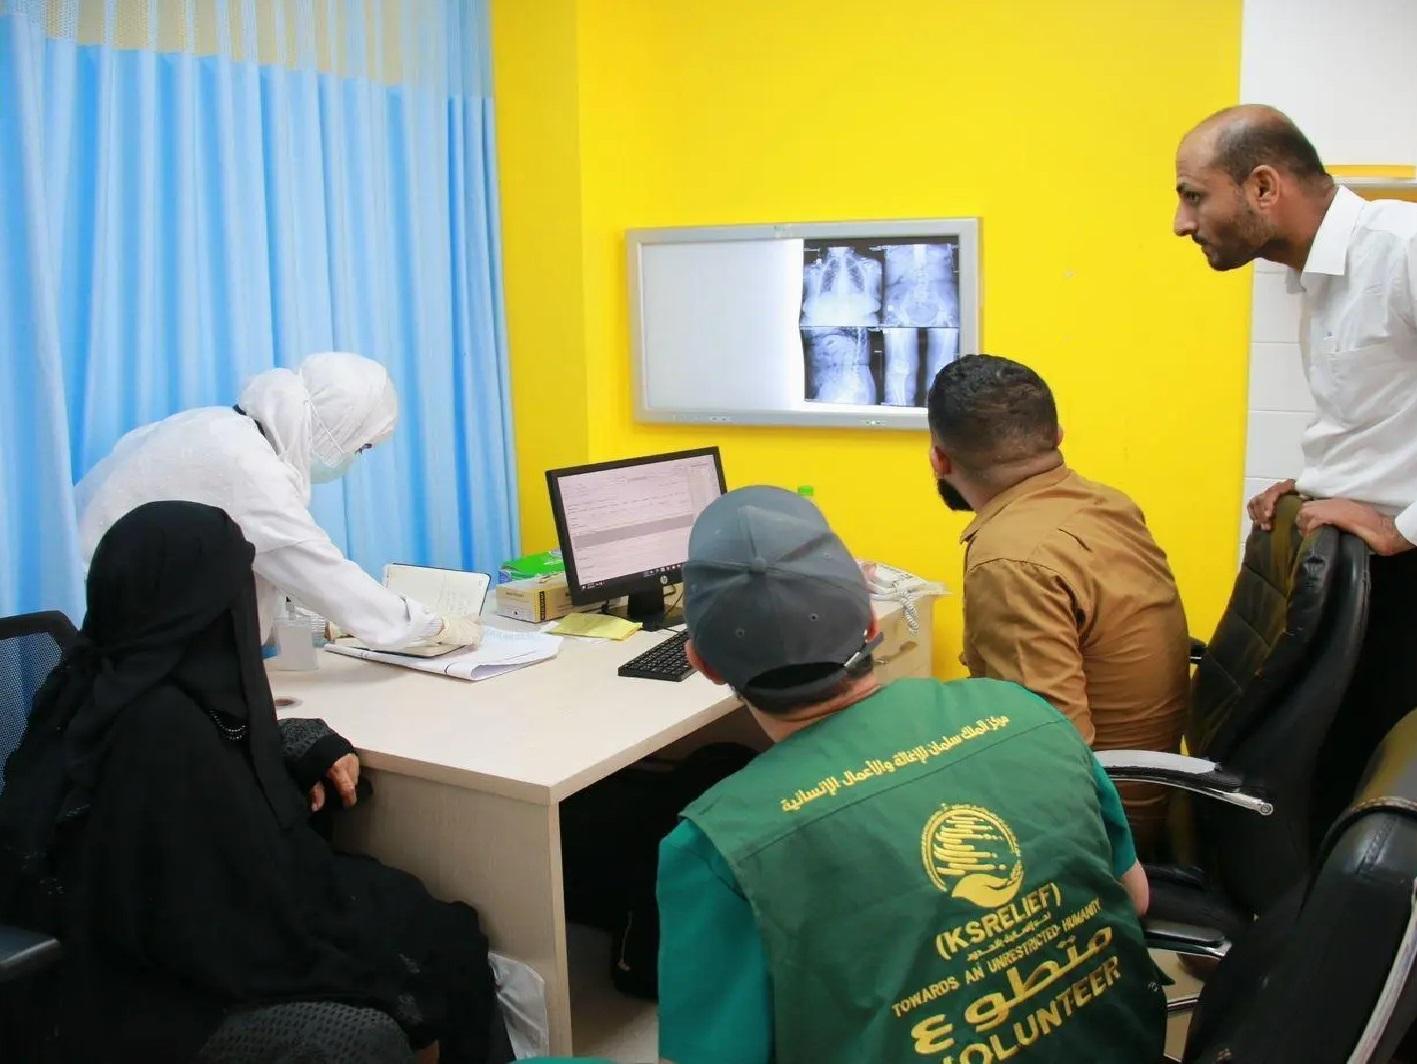 مركز الملك سلمان ينفذ مشاريع طبية لجراحة القلب والقسطرة ولجراحة العظام في محافظات اليمن

